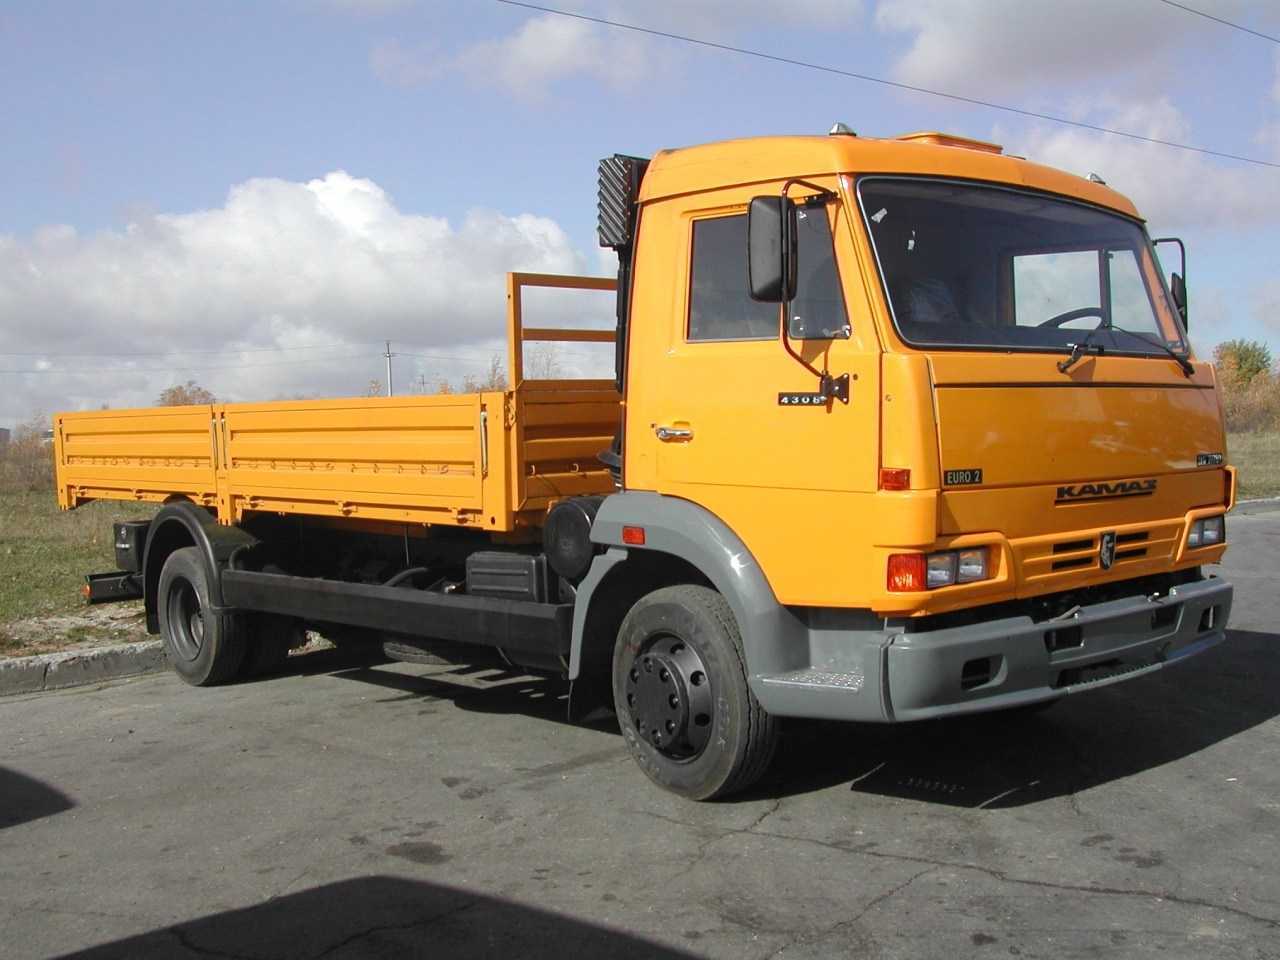 Обзор грузового автомобиля КамАЗ-4308-Н3 в исполнении шасси и бортовом с фото Технические характеристики КамАЗ 4308-H3 и